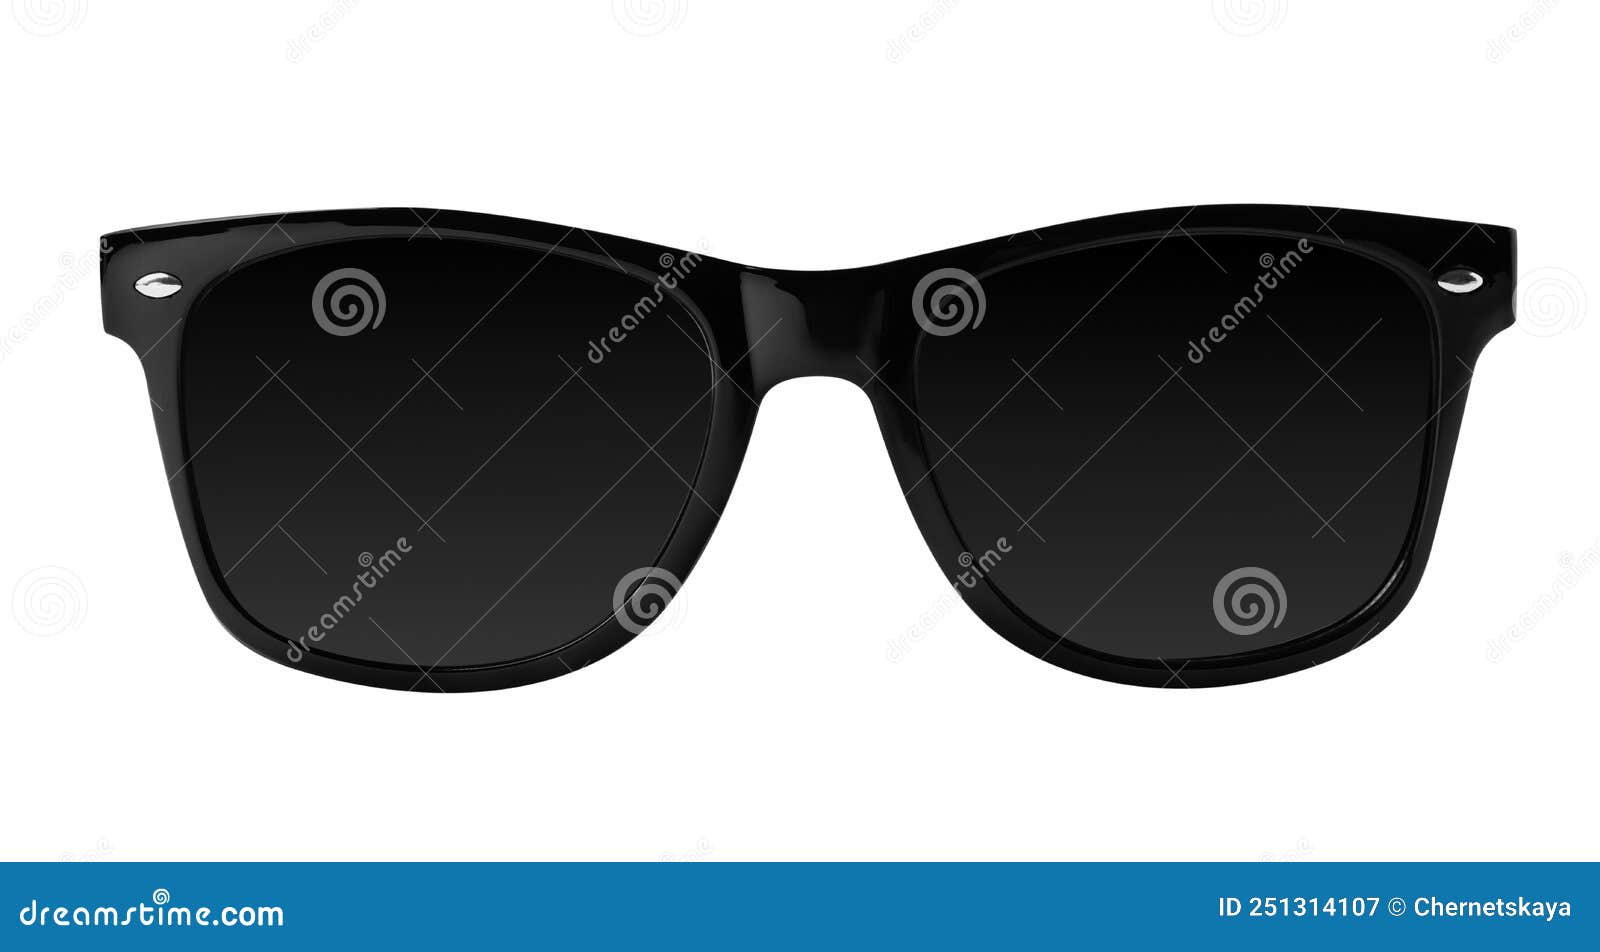 New Stylish Sunglasses Isolated on White. Sun Protection Stock Image ...